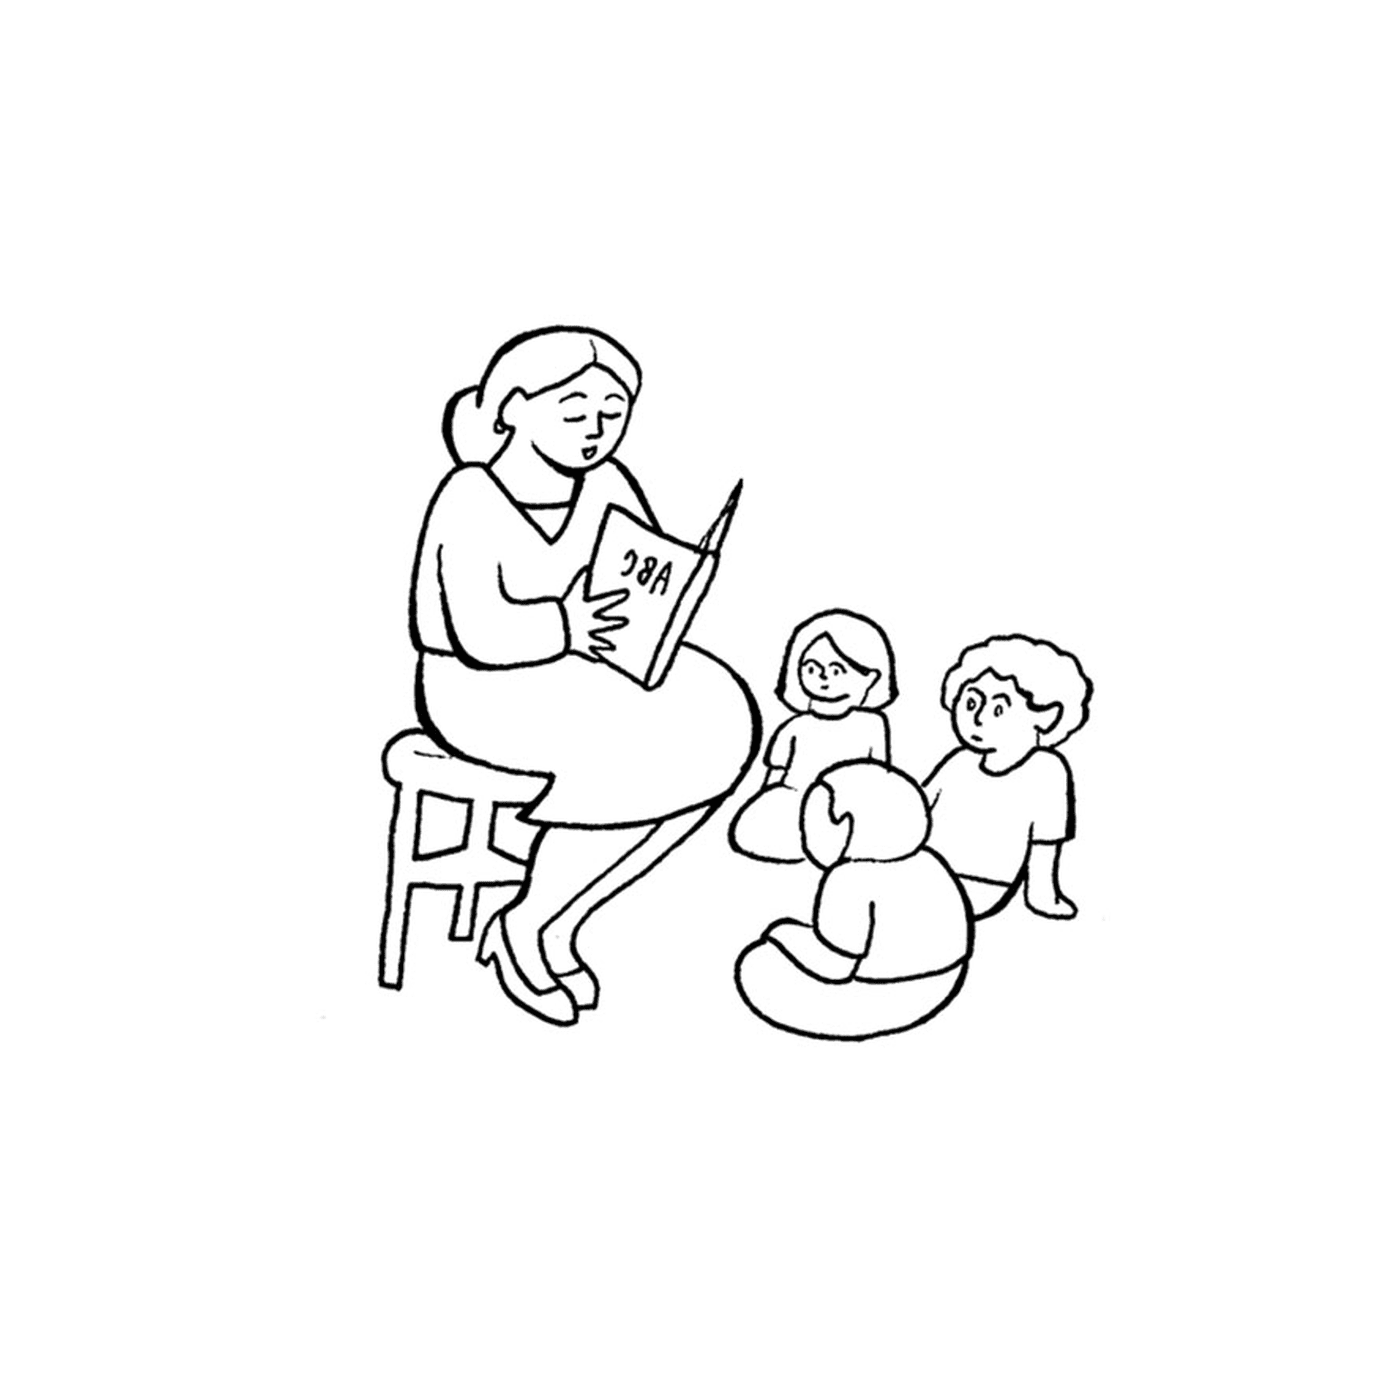  Ein Lehrer liest ein Zwei-Kind-Buch 